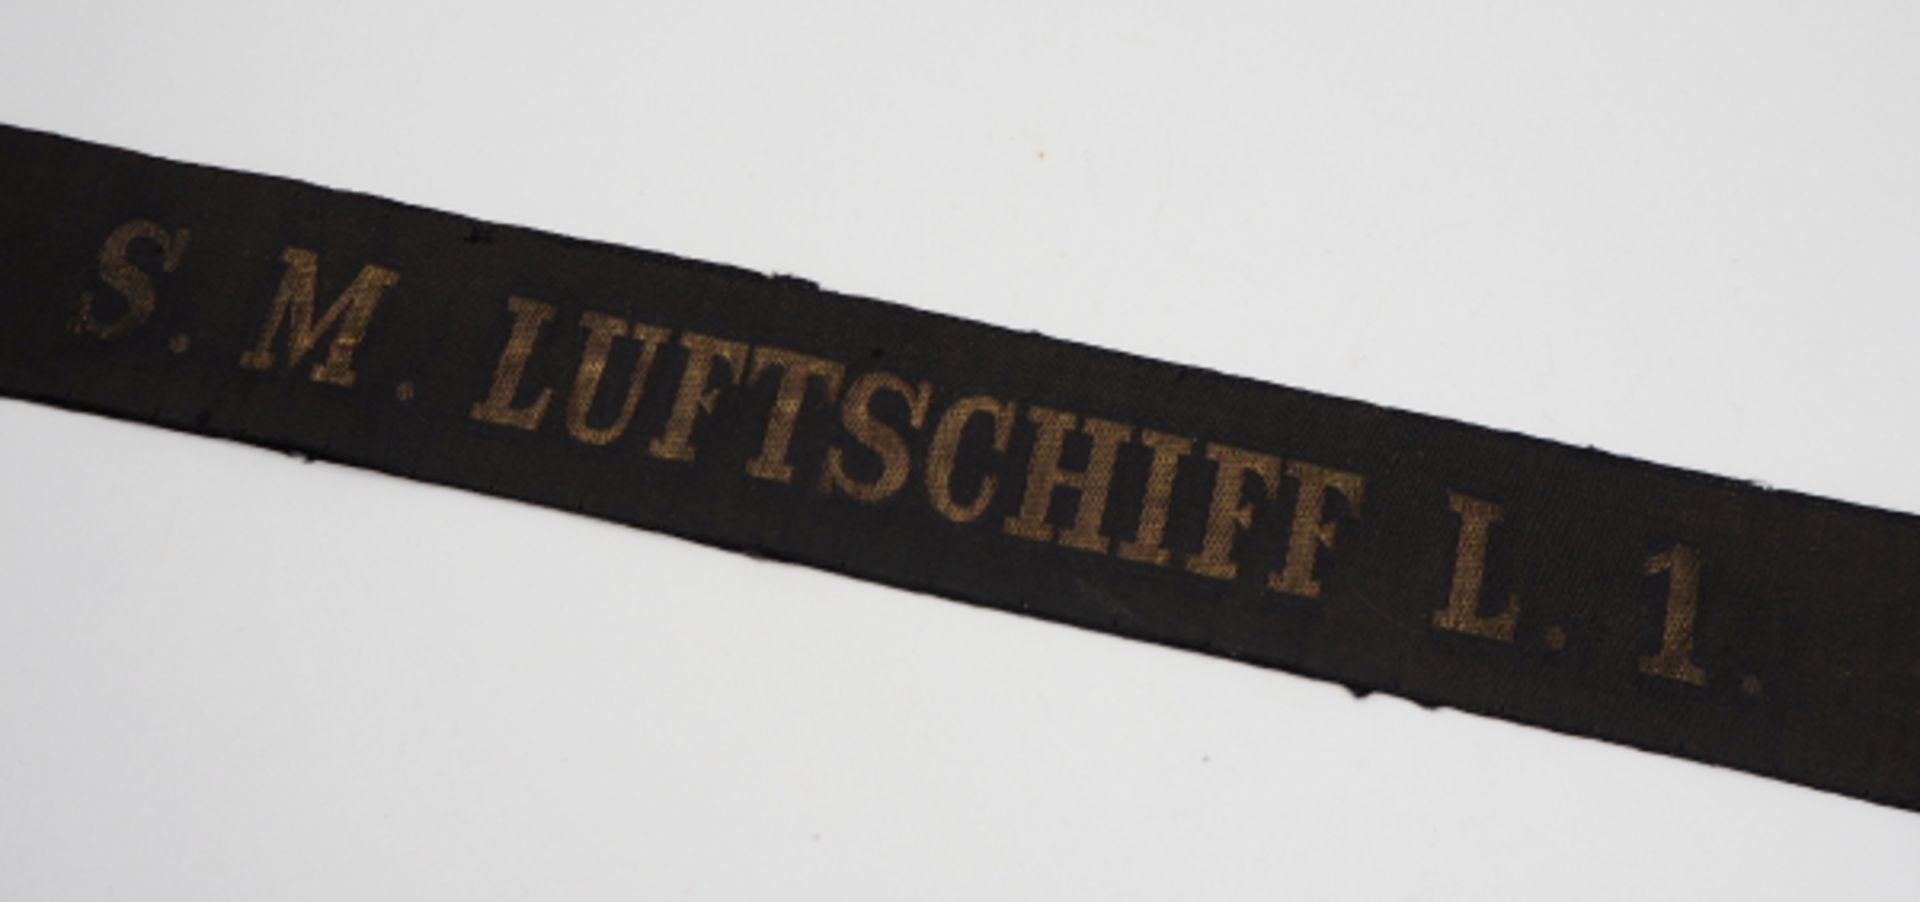 Mützenband: S.M. LUFTSCHIFF L.1.Schwarzes Band mit eingewebten goldenen Lettern.Zustand: II - Bild 2 aus 3